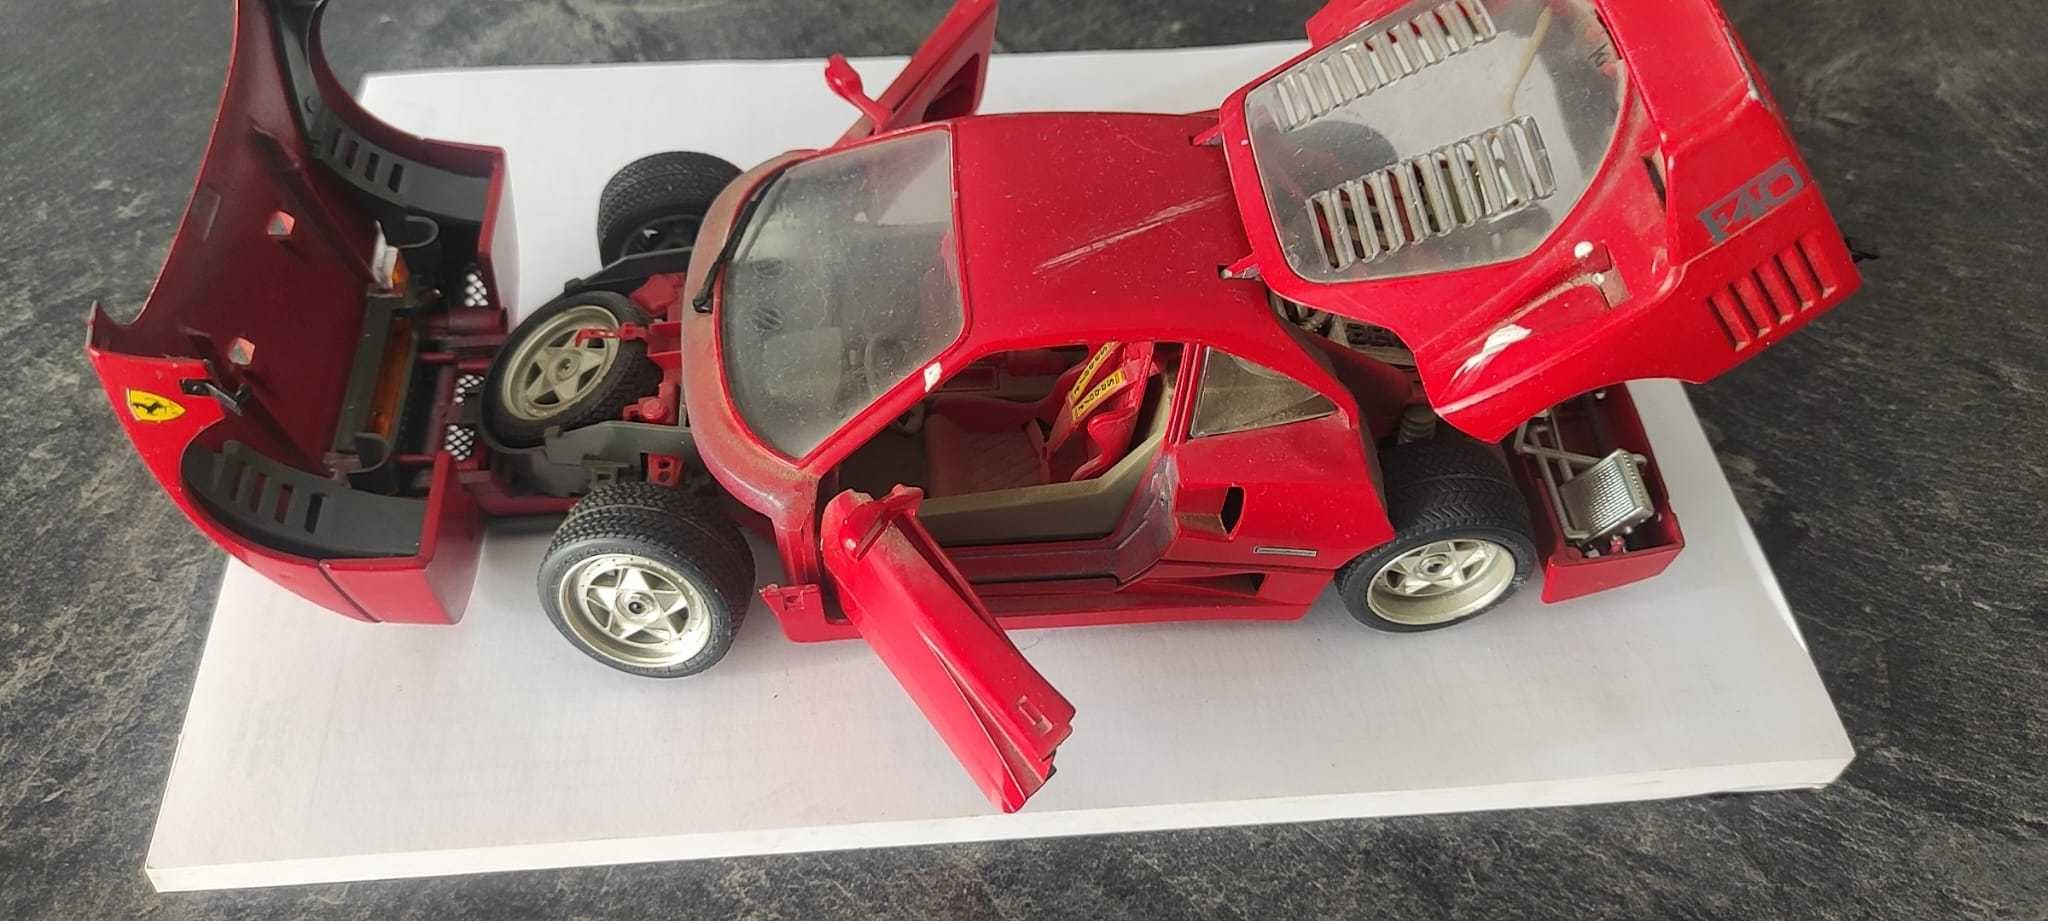 Mașinuță Ferrari F40 1987 colectie Pret Fix fara pierdere de timp.